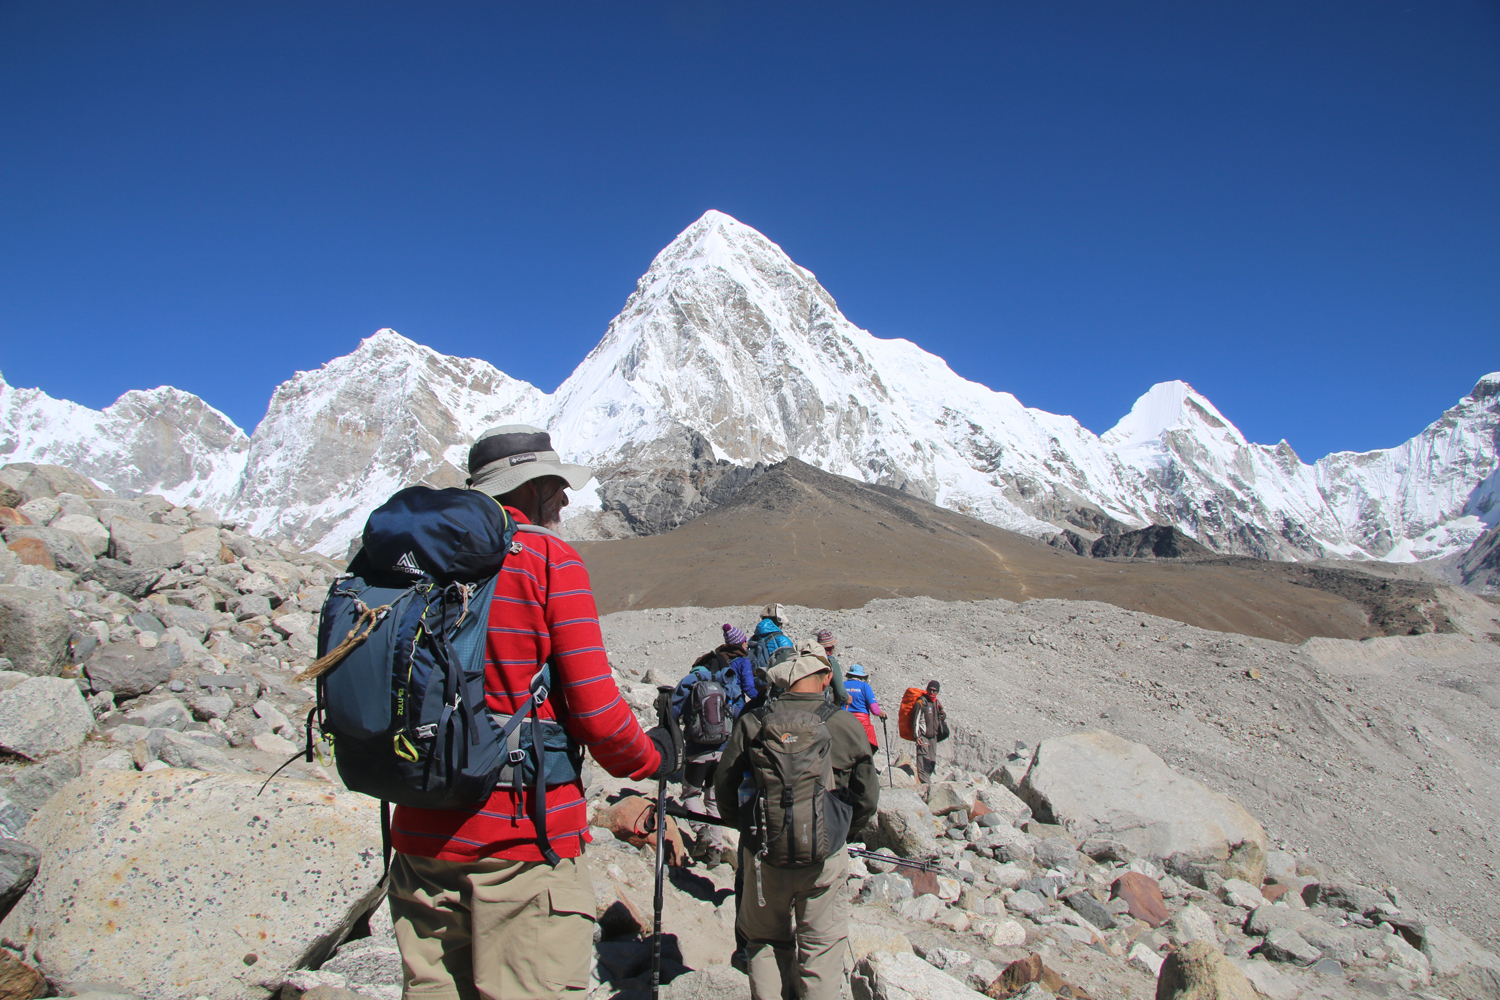 Packing List for Everest Base Camp Trek